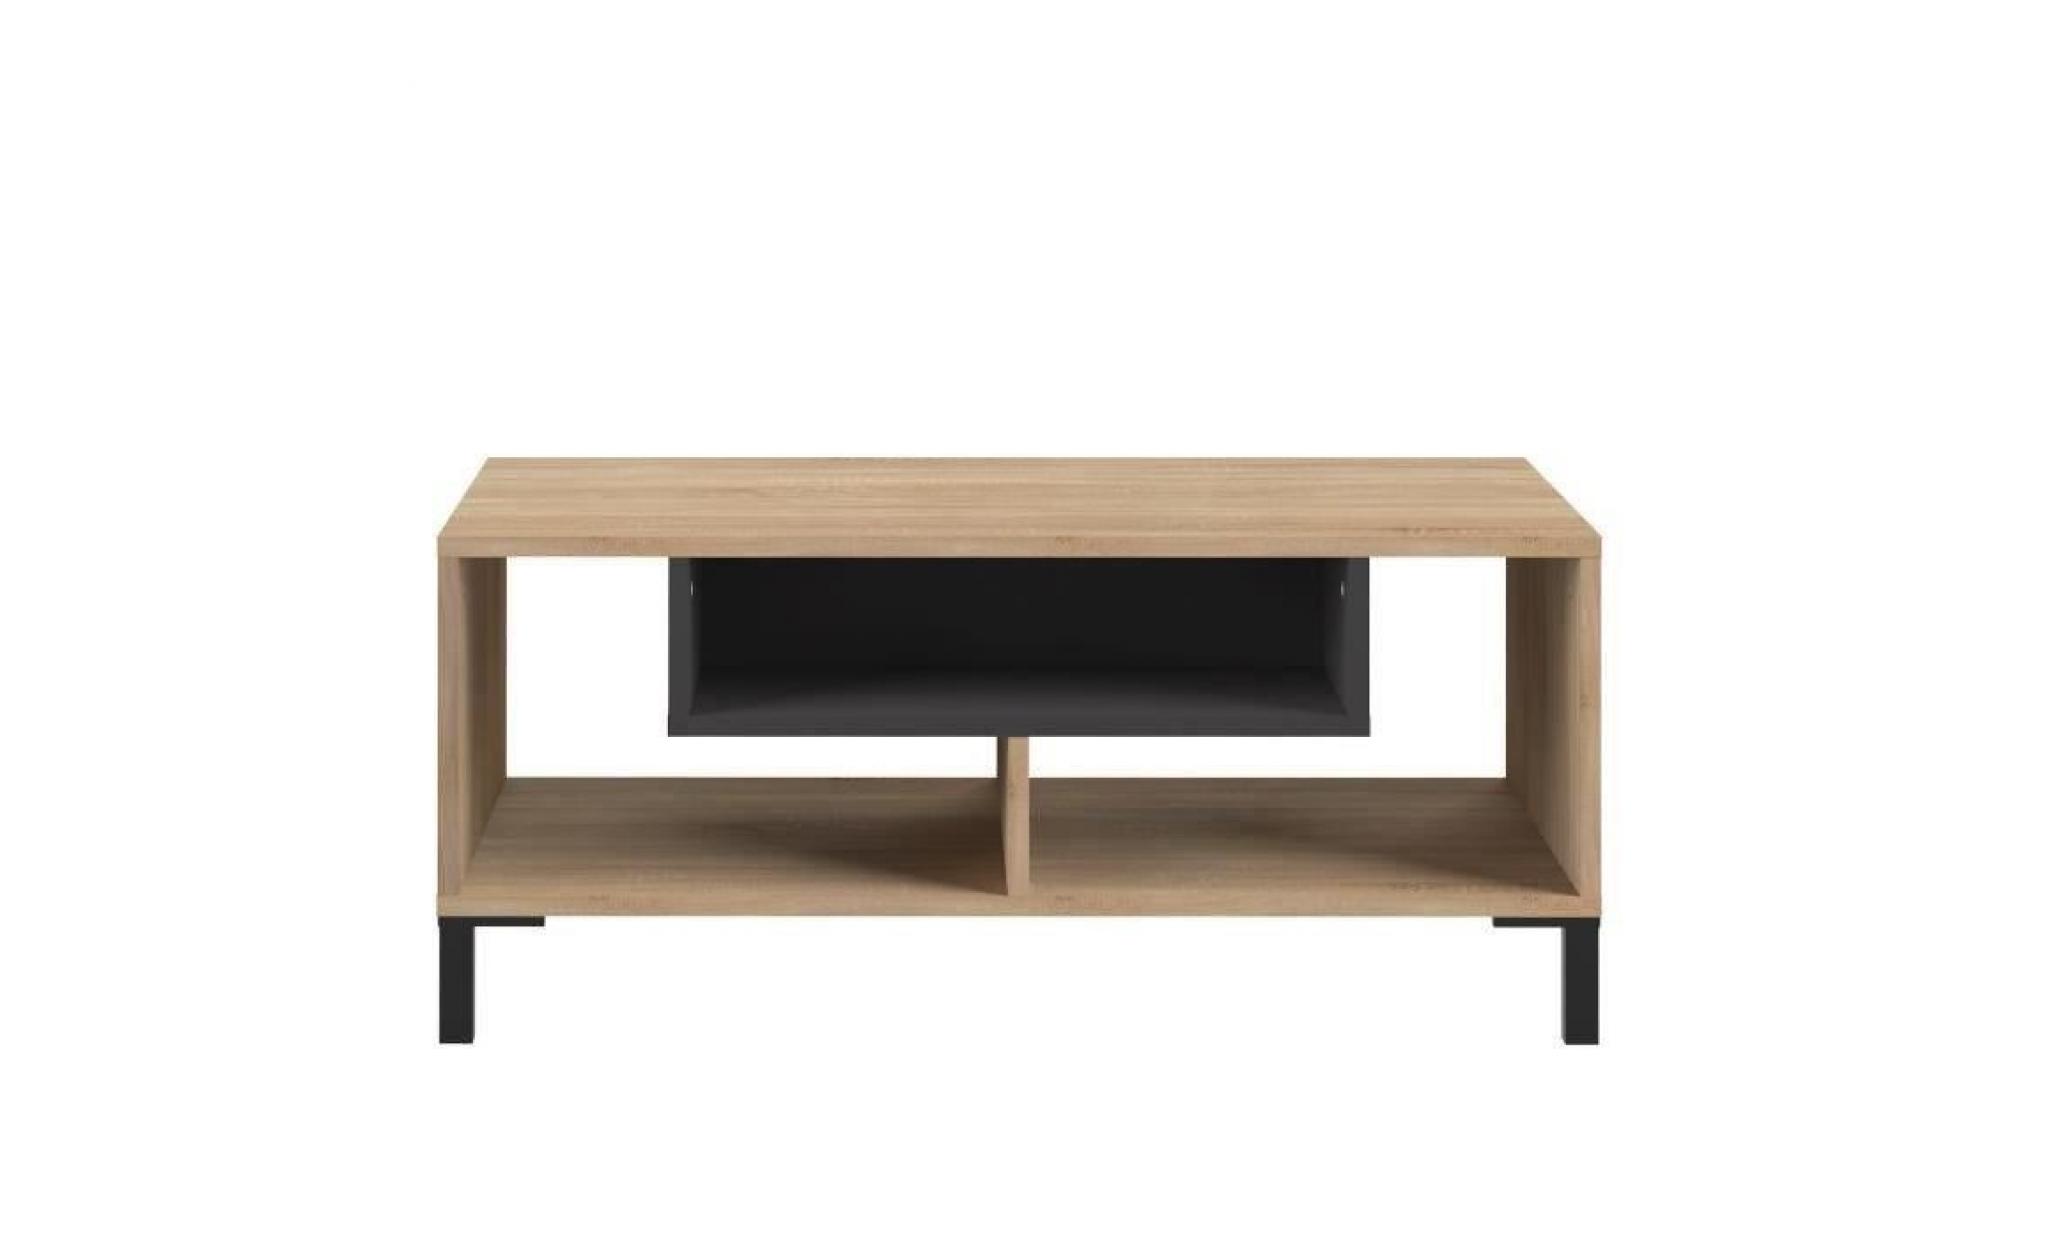 finlandek table basse odaiba   contemporain   décor chêne clair et noir   l 89,5 cm pas cher